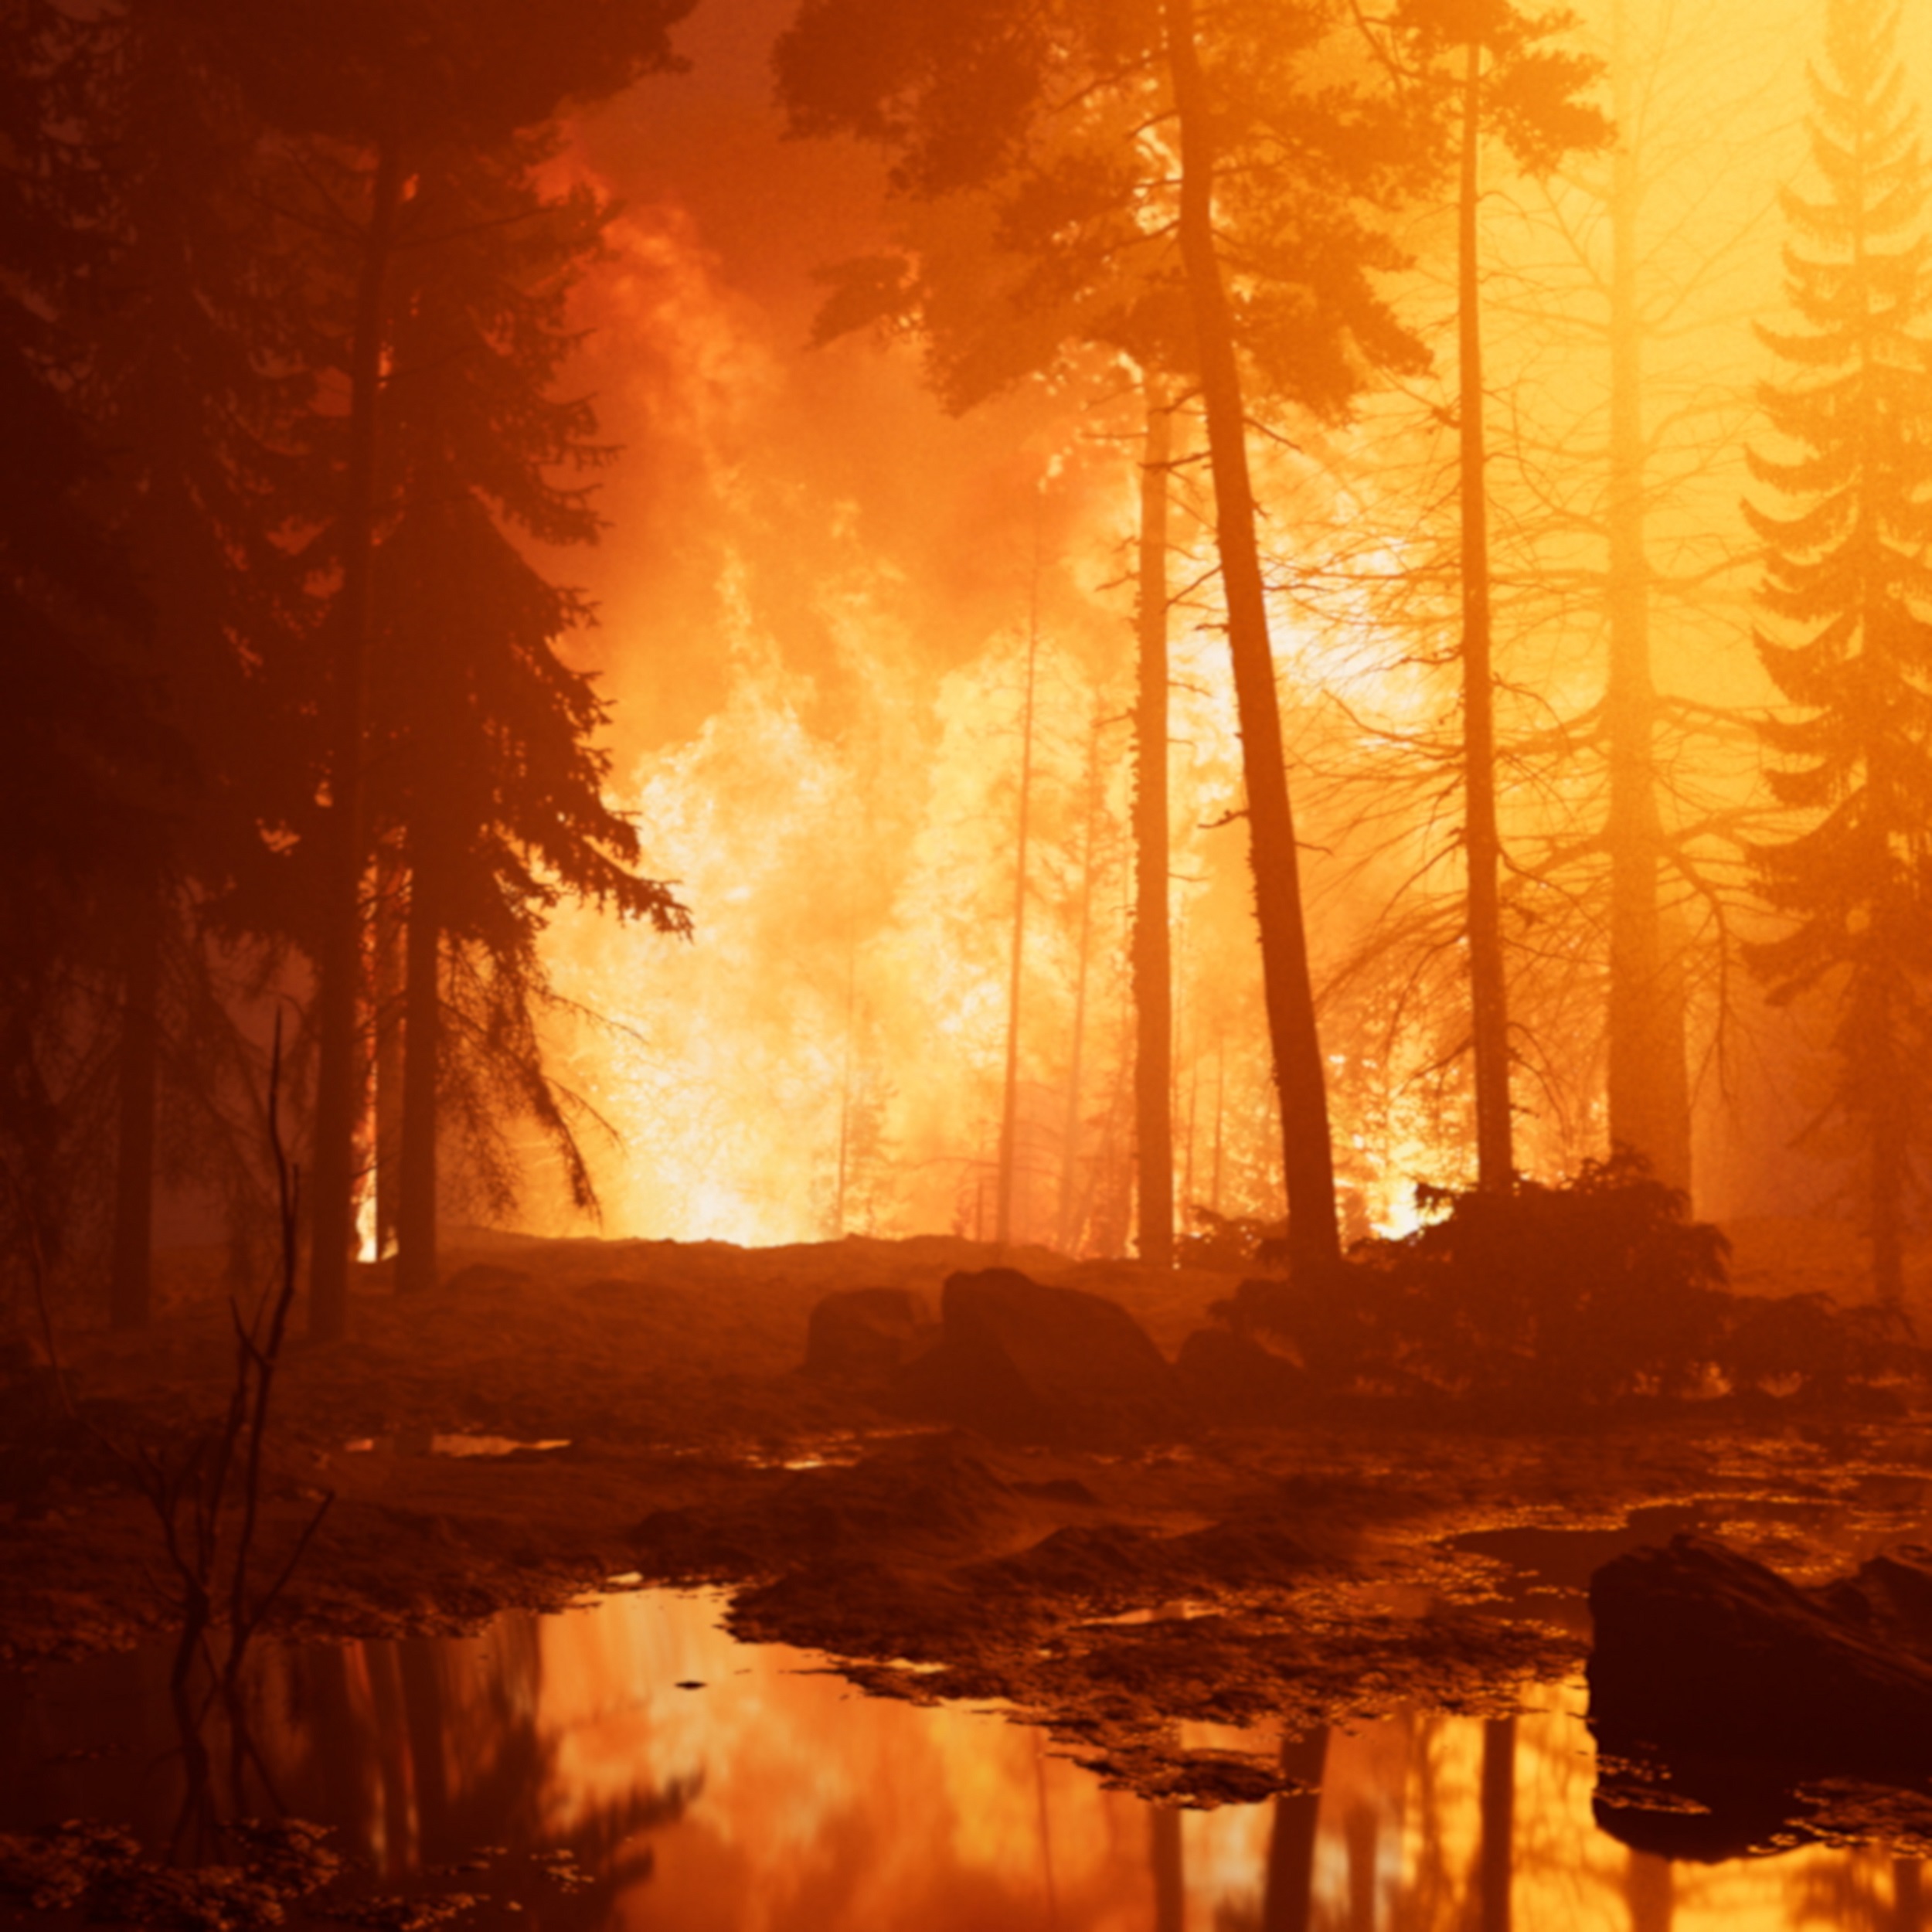 David Claerbout: Futótűz (merengés a tűzön) | Wildfire (meditation on fire), 2019–2020 © David Claerbout